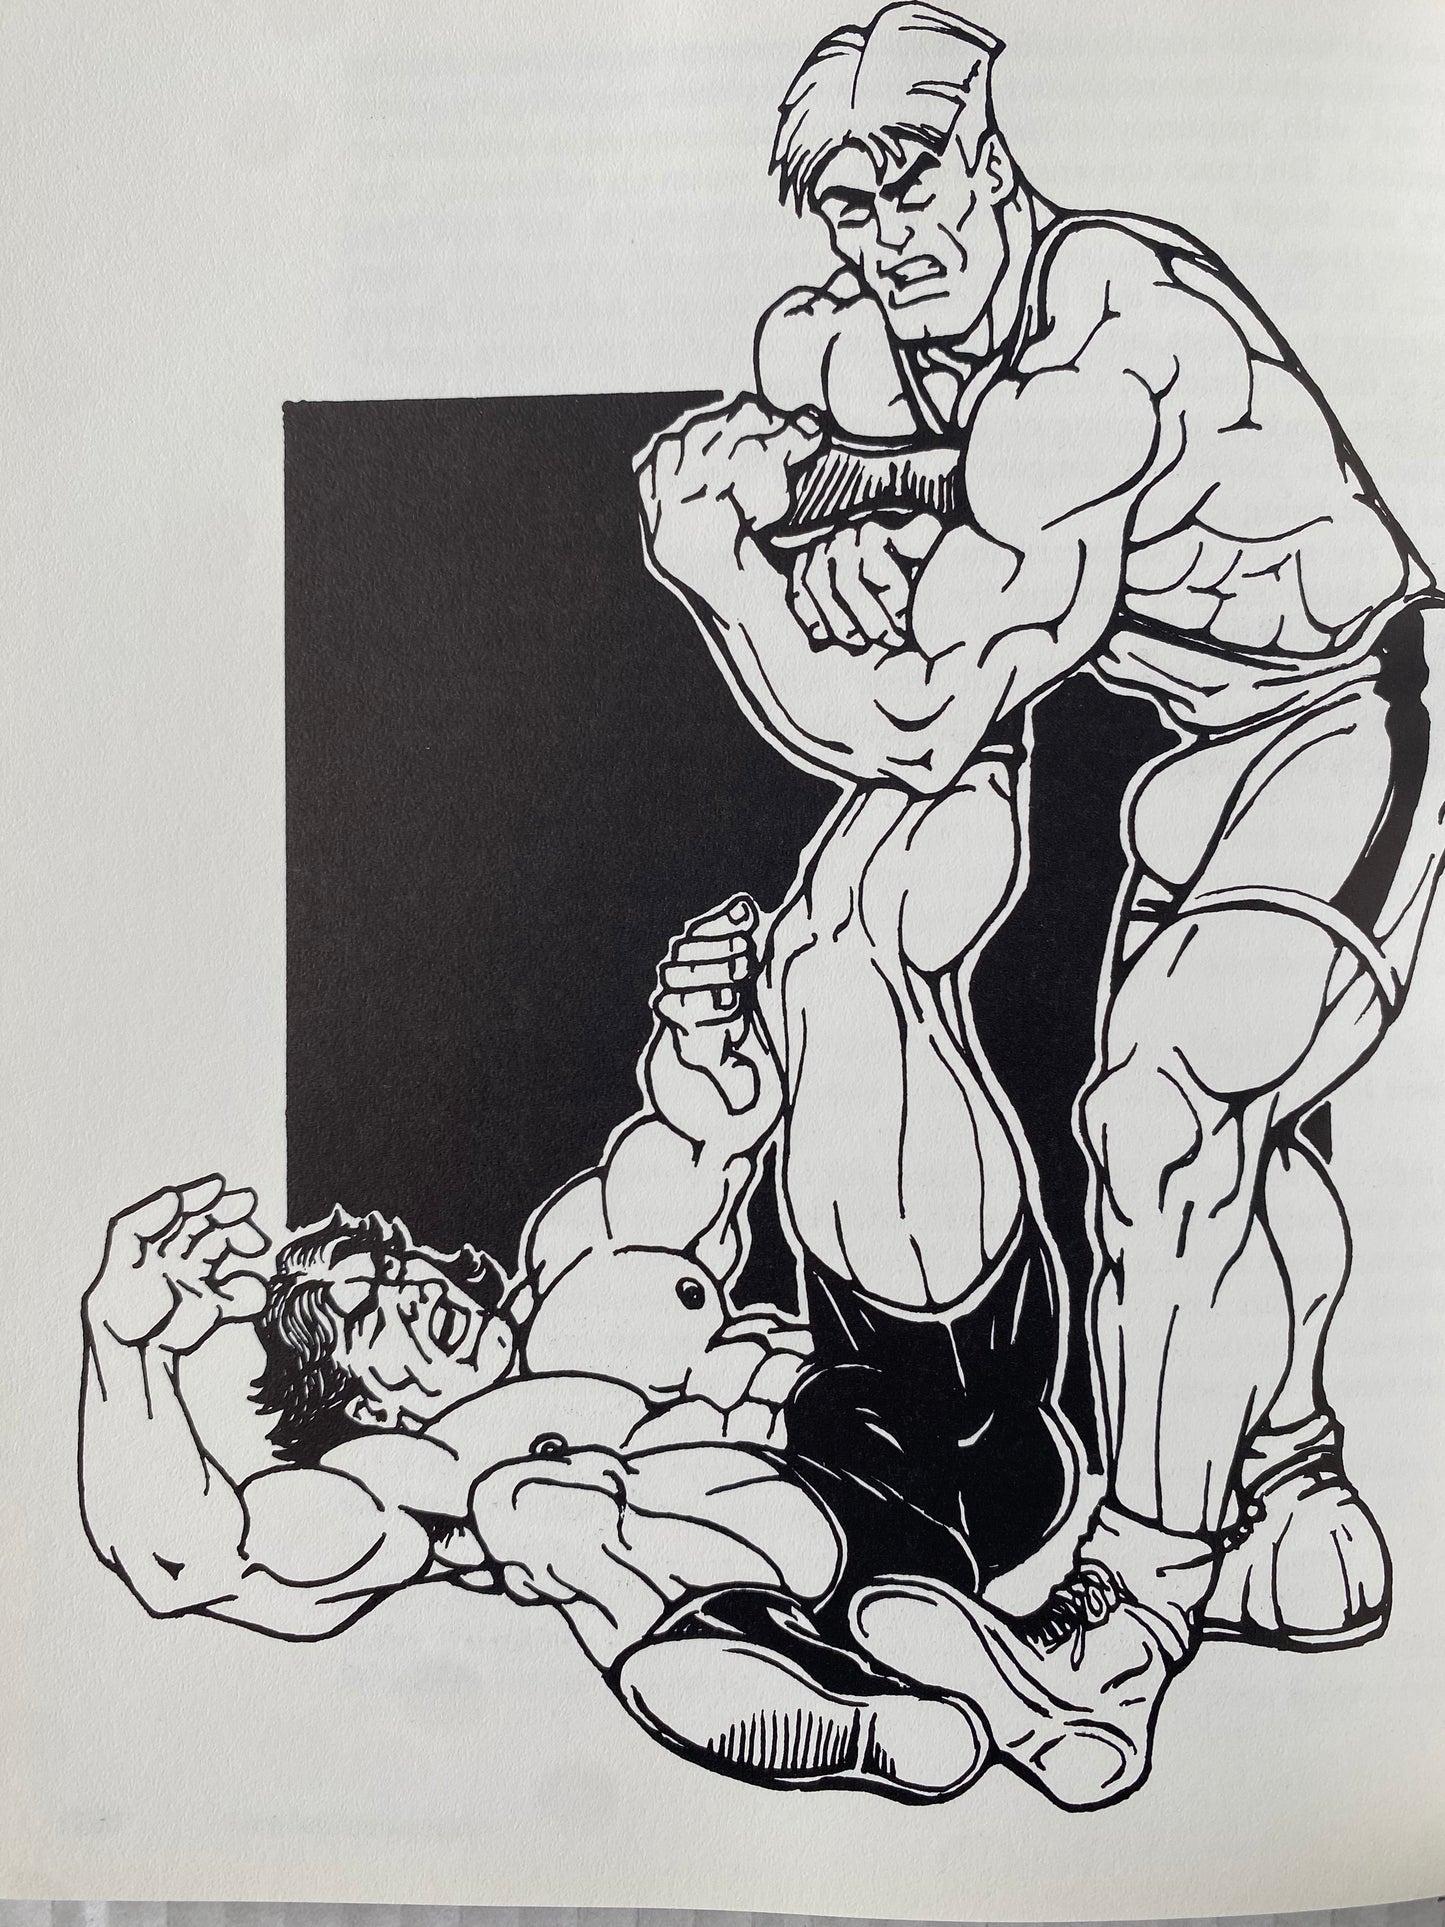 Wrestling For Gay Guys (1995)